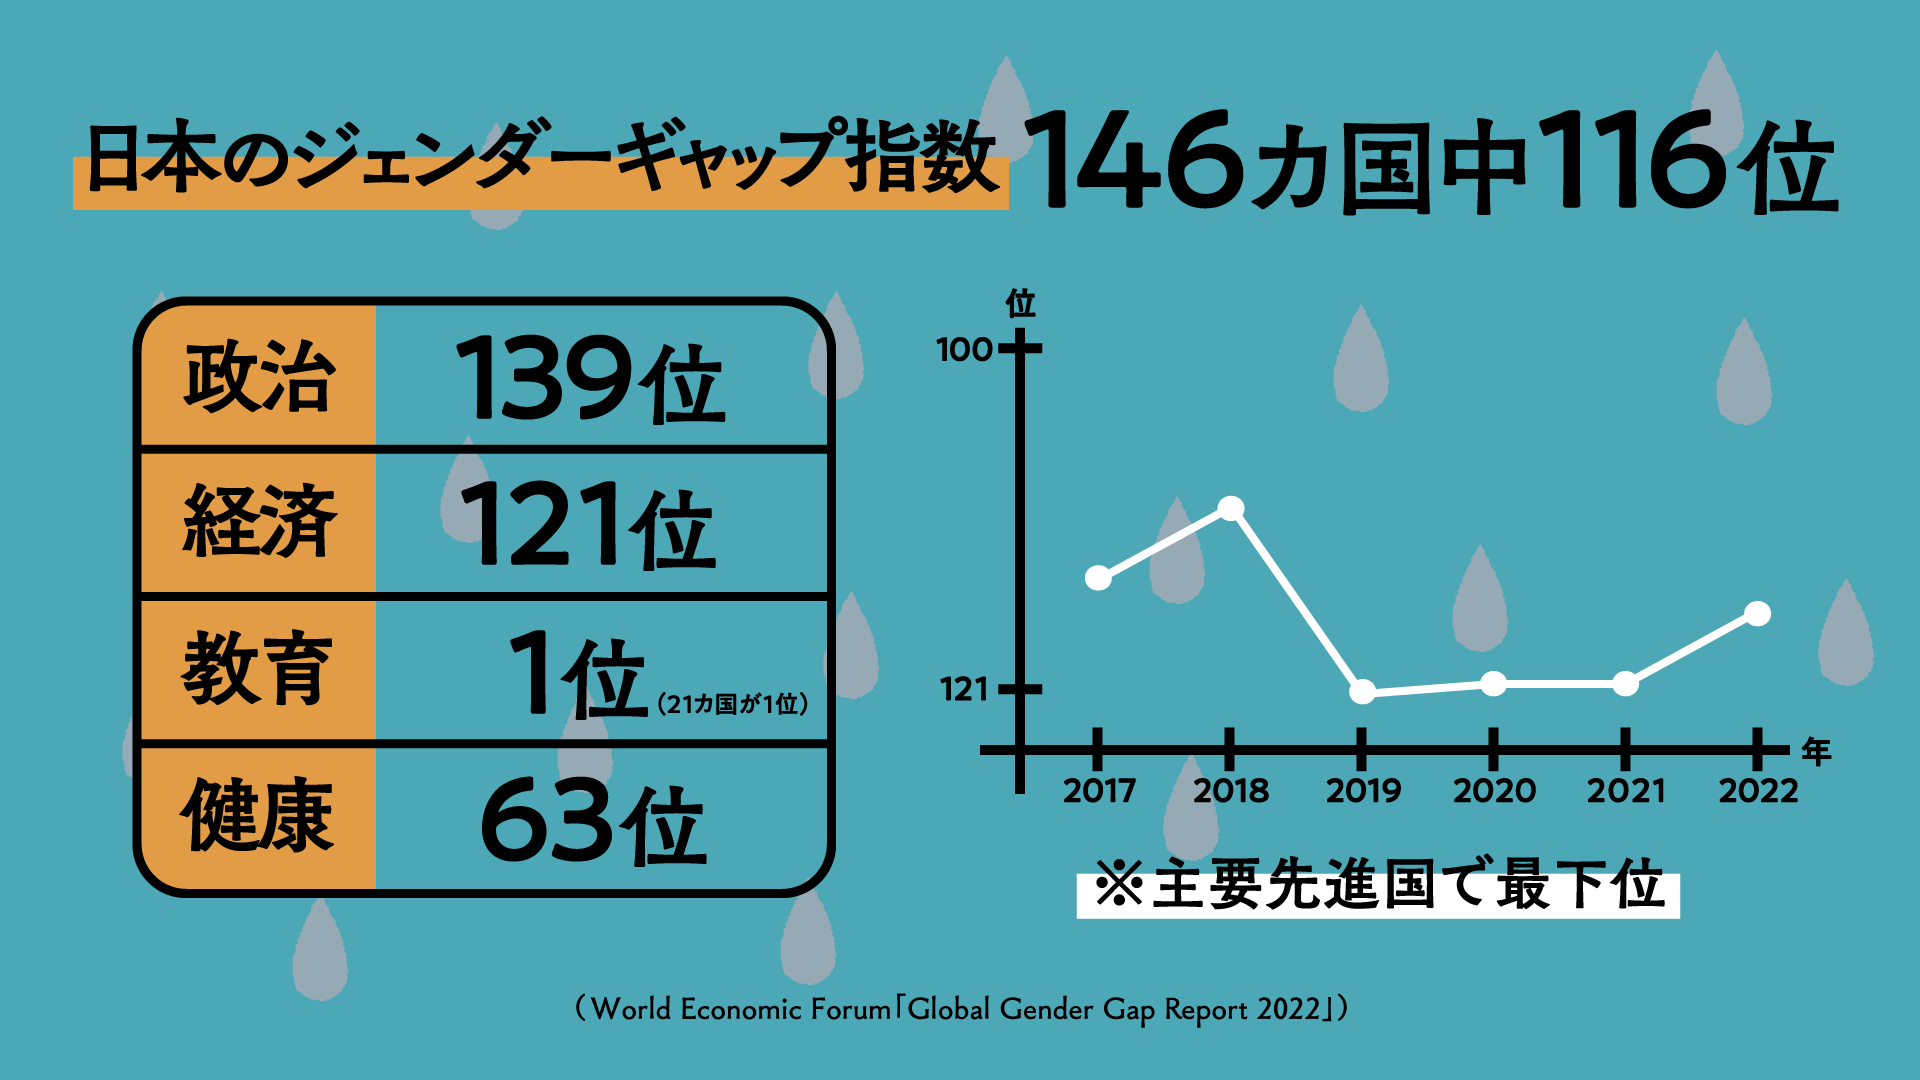 日本の「ジェンダー・ギャップ指数」は146か国中116位